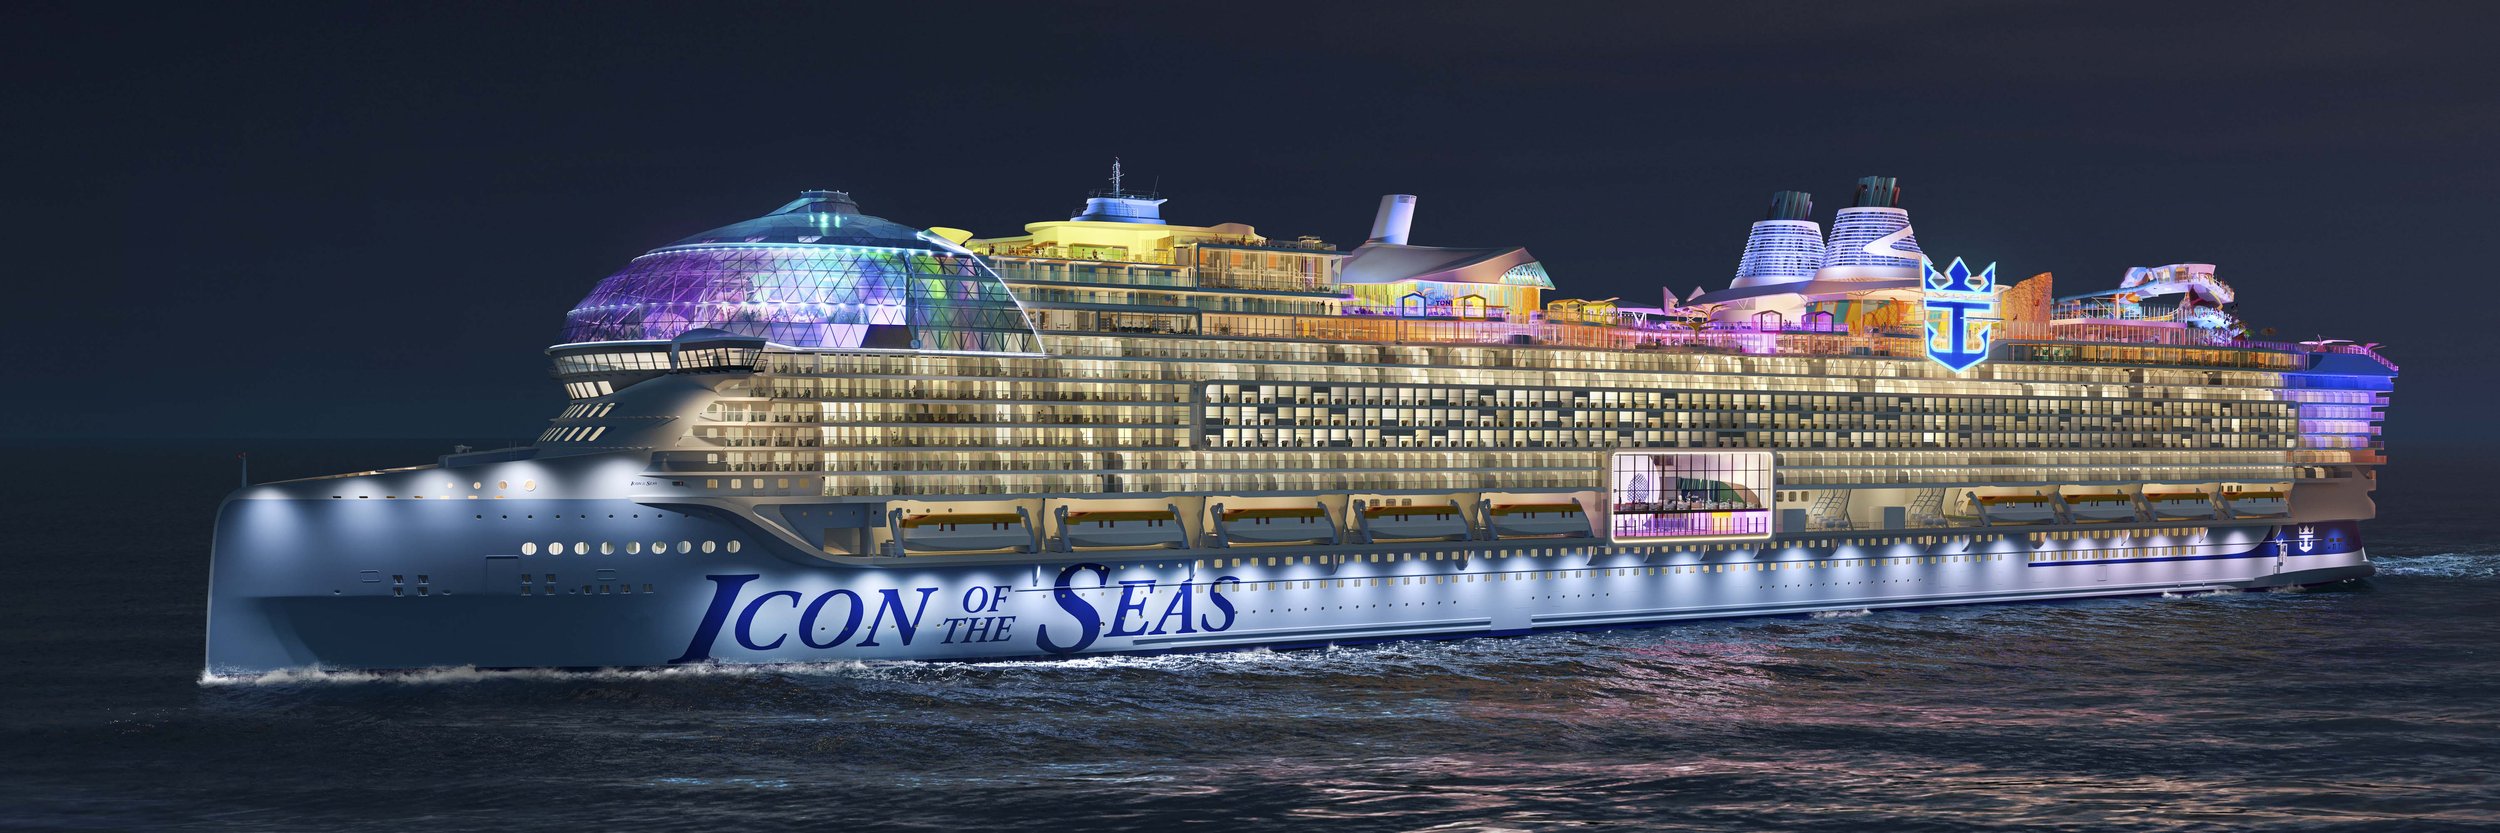 Самый большой круизный лайнер в мире 2023. Круизный лайнер icon of the Seas. Самый большой круизный лайнер в мире 2022. Royal Caribbean International корабли. Энергии февраля 2024 года